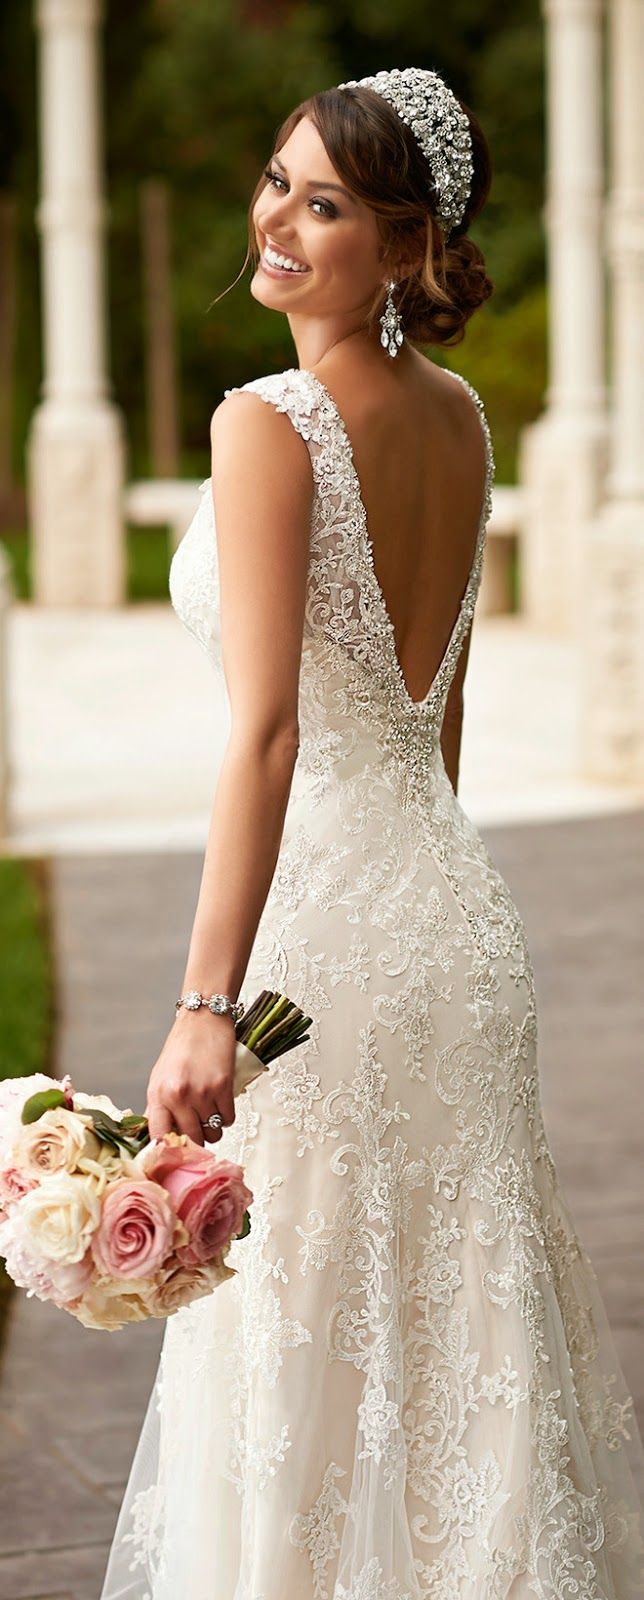 Tips for Wedding Dress Shopping